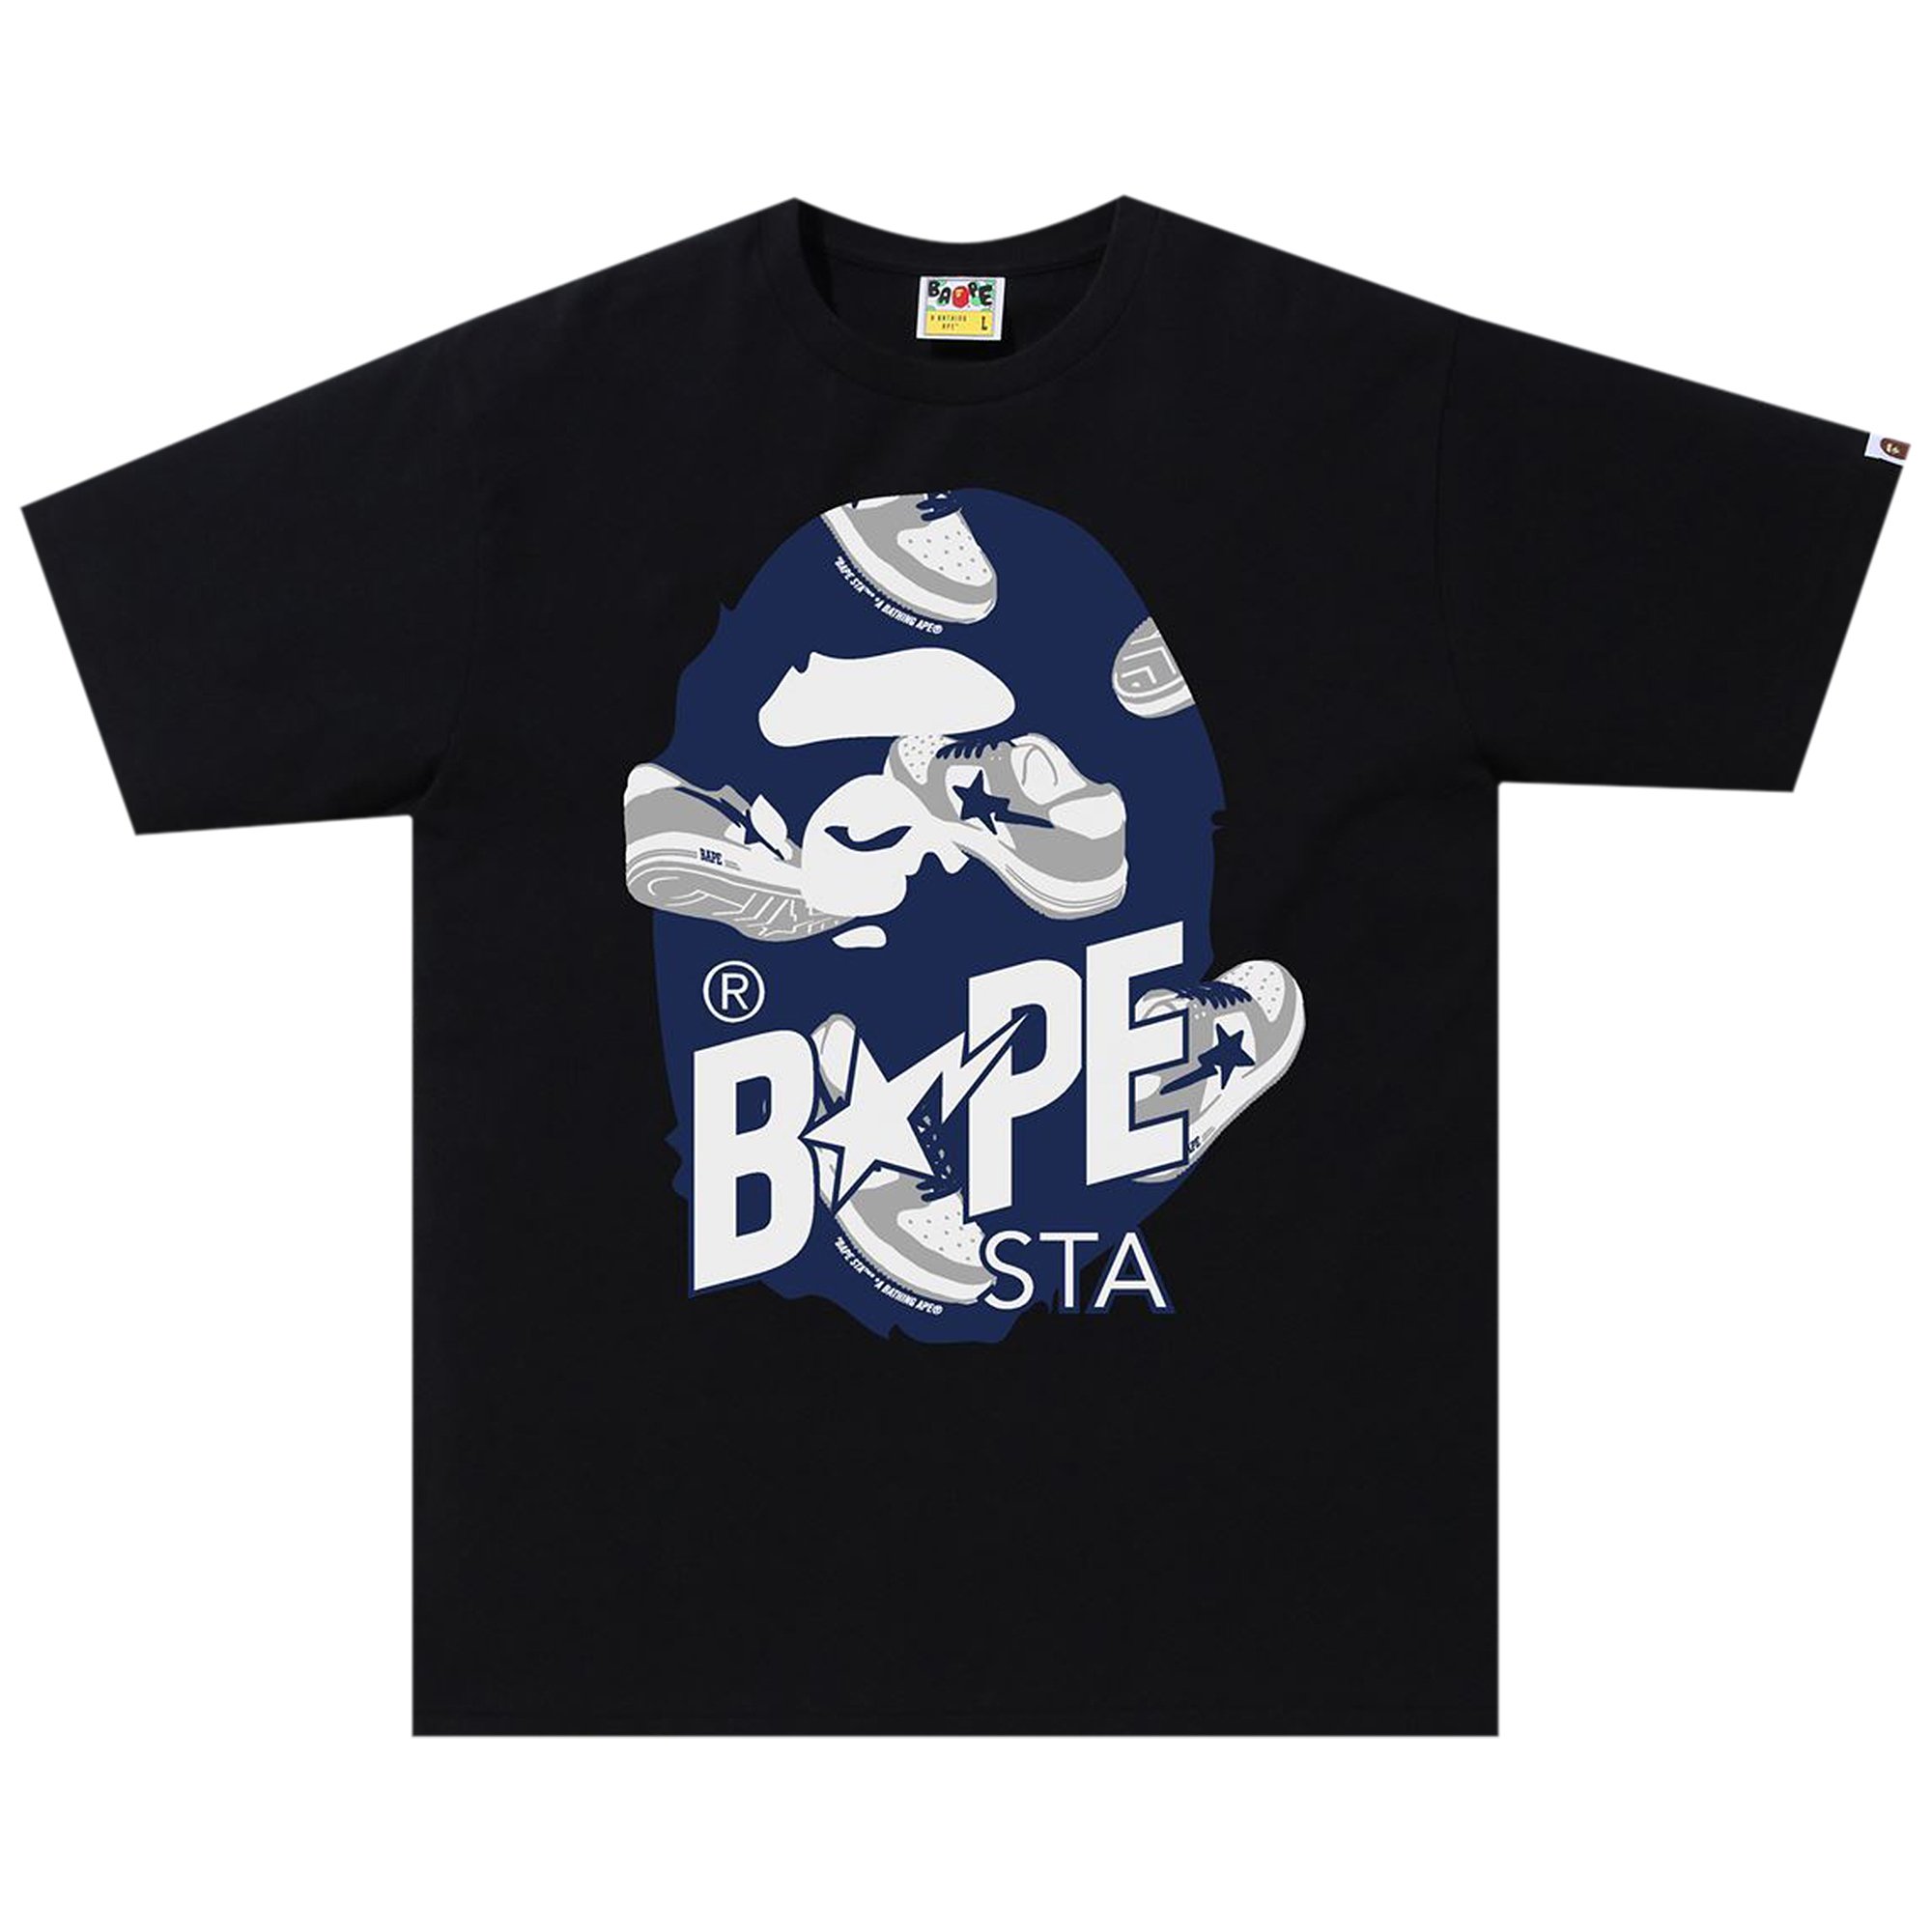 BAPE Random Свободная футболка Bape Sta Ape Head, цвет Черный/Темно-синий